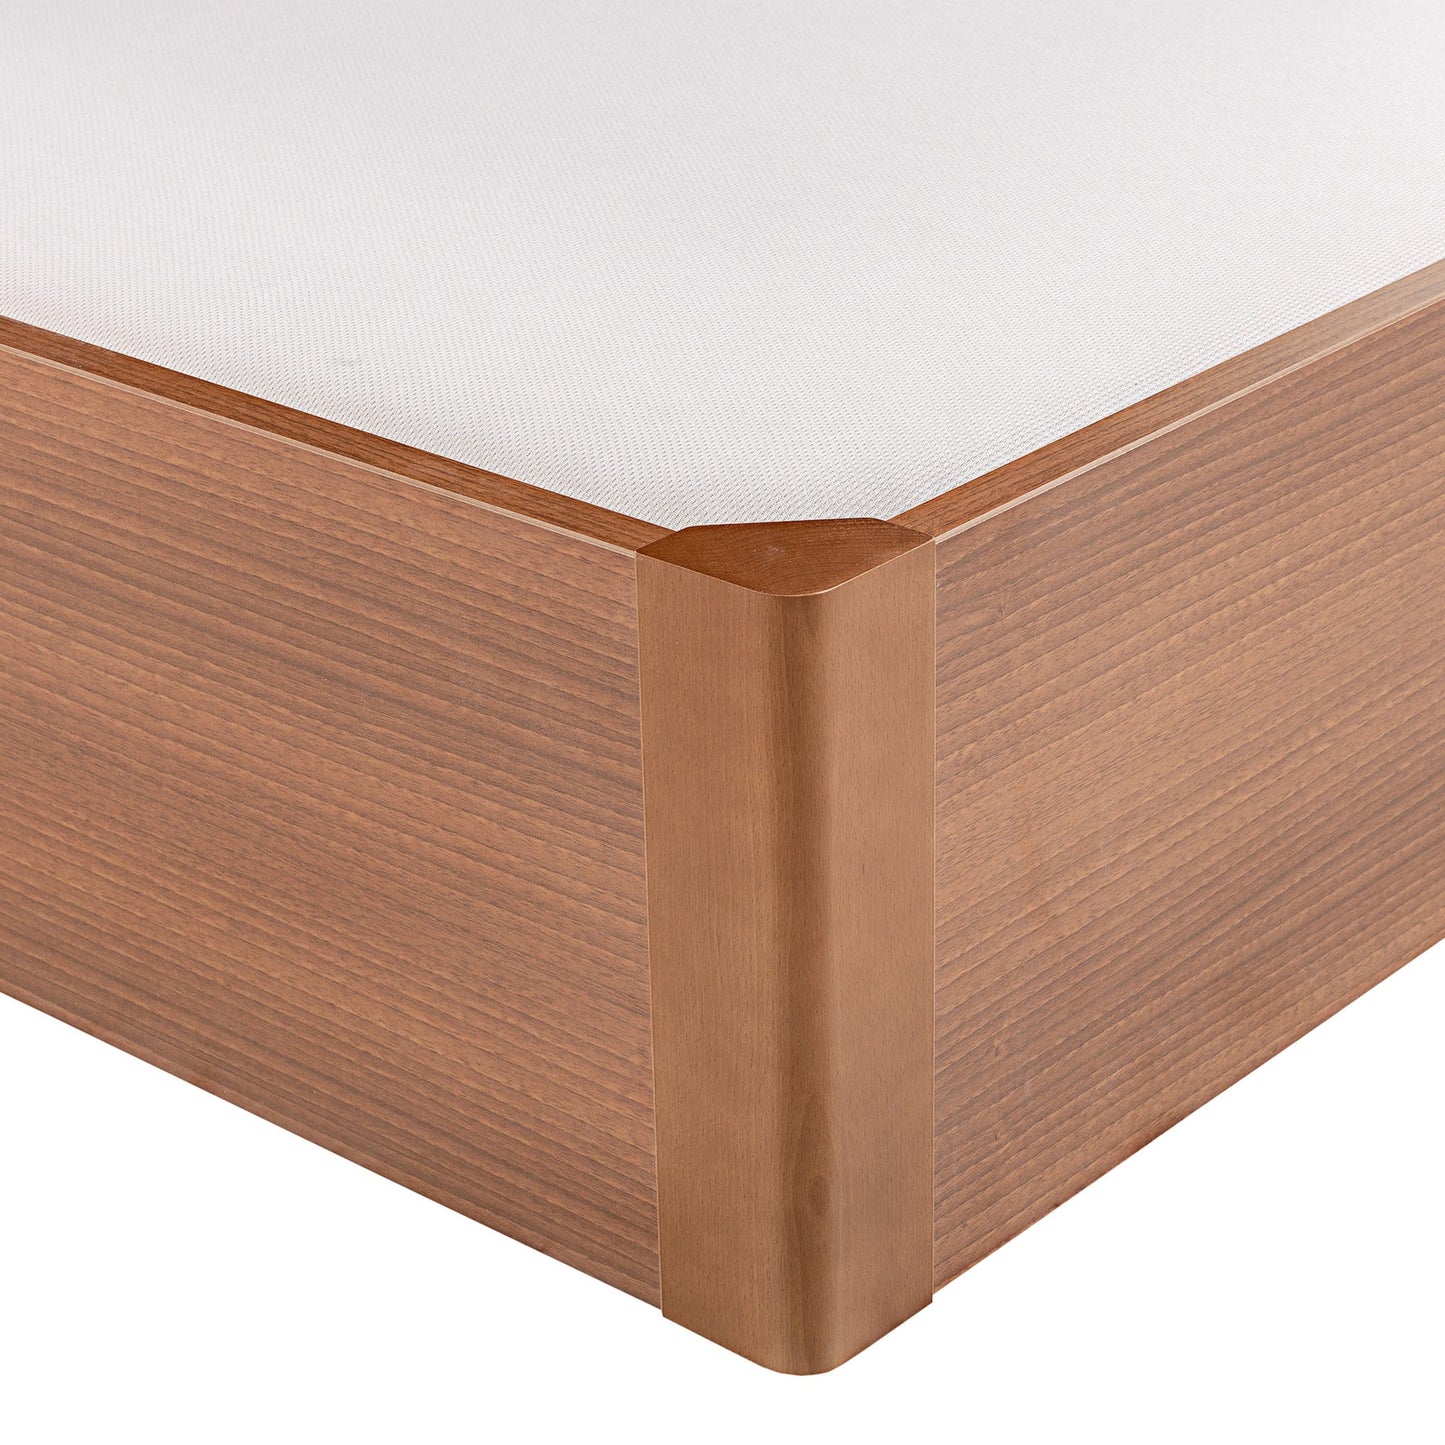 Canapé abatible de madera tapa única de color cerezo - DESIGN - 105x200